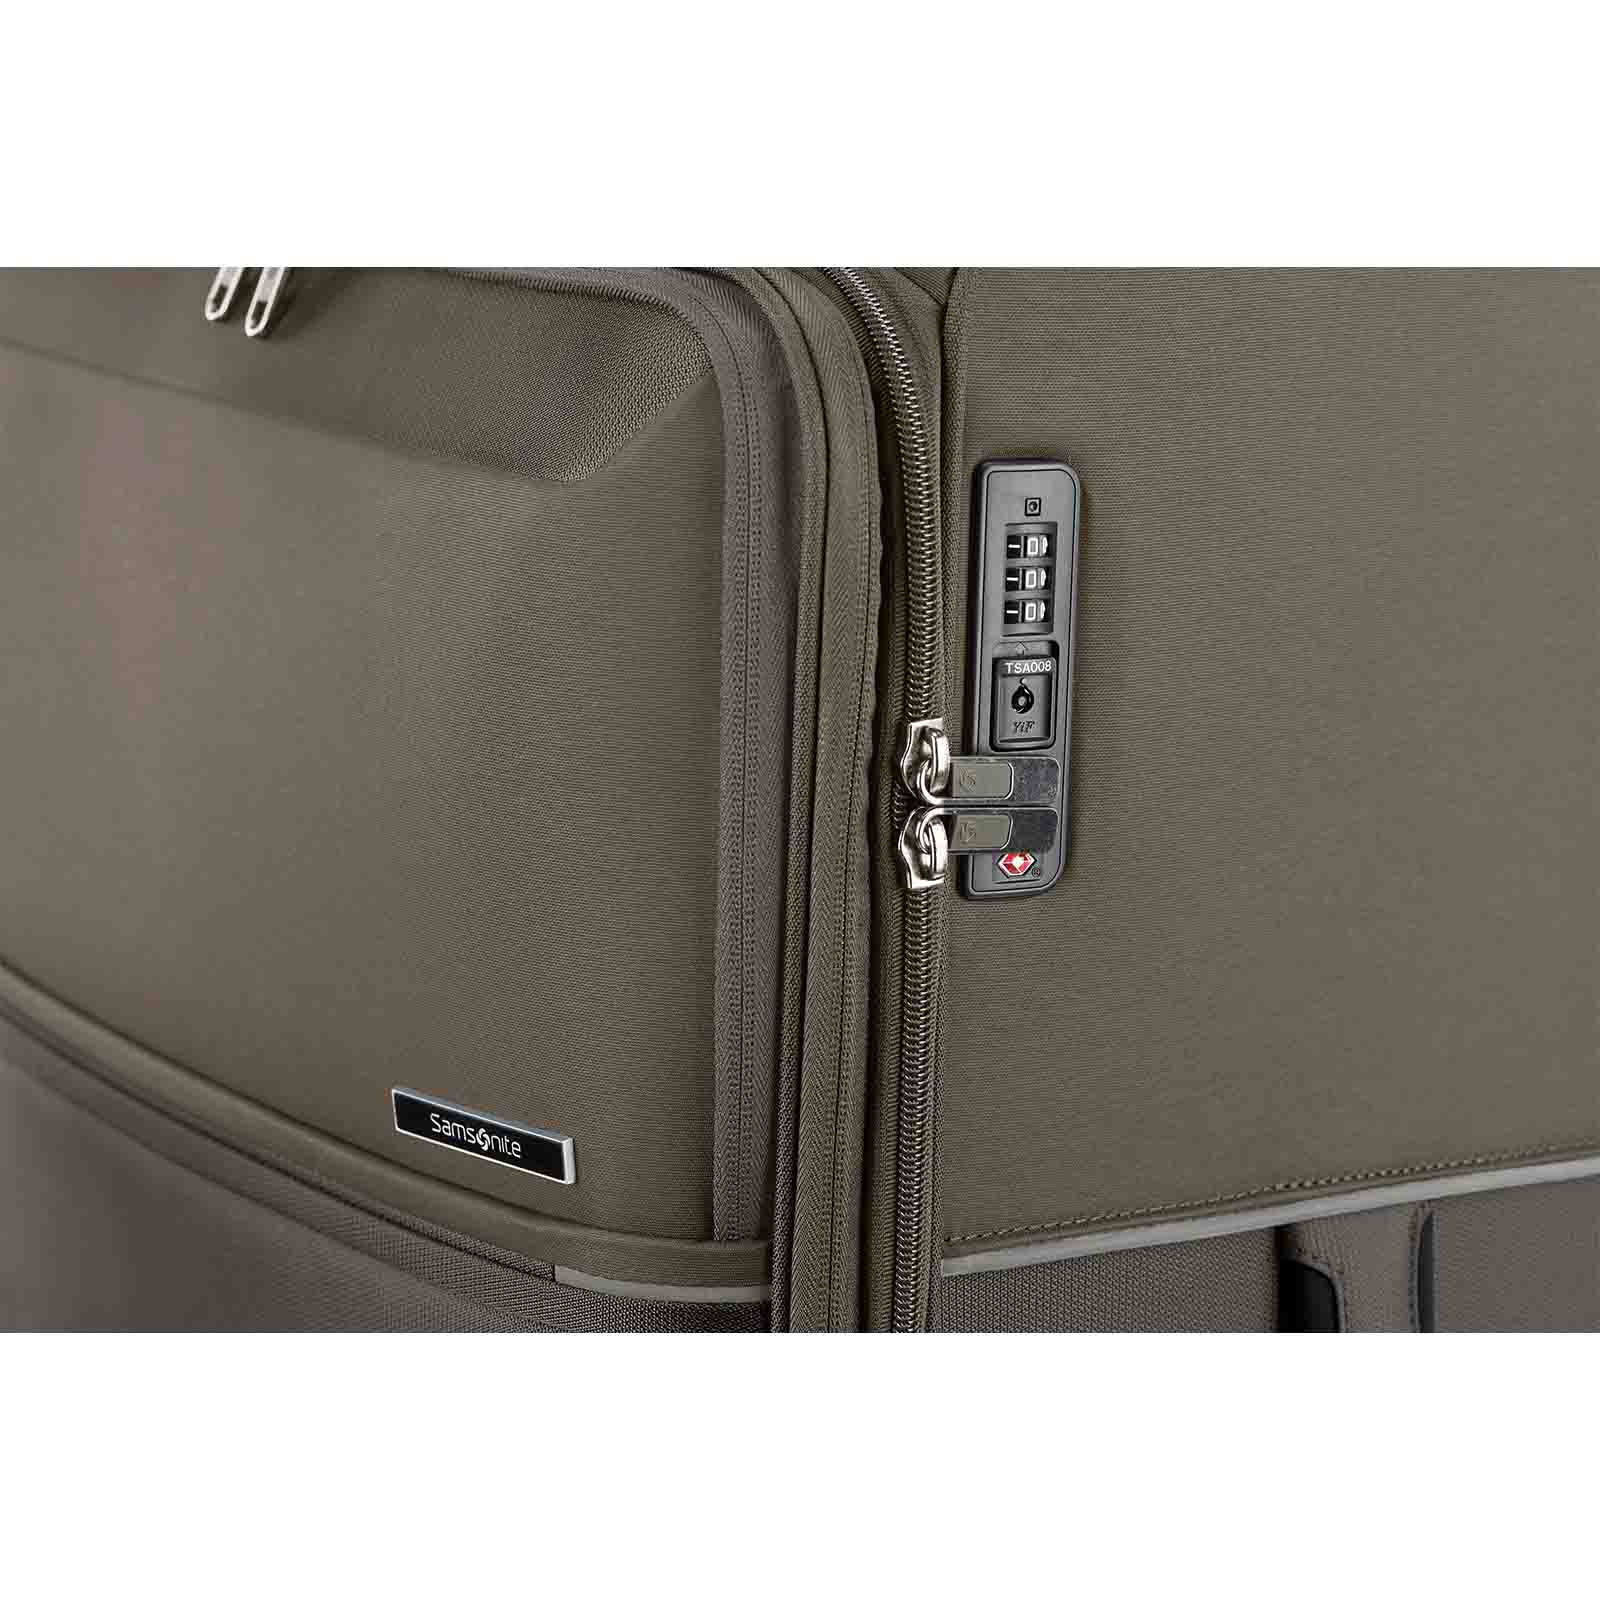 Samsonite-73h-78cm-Suitcase-Platinum-Grey-Lock